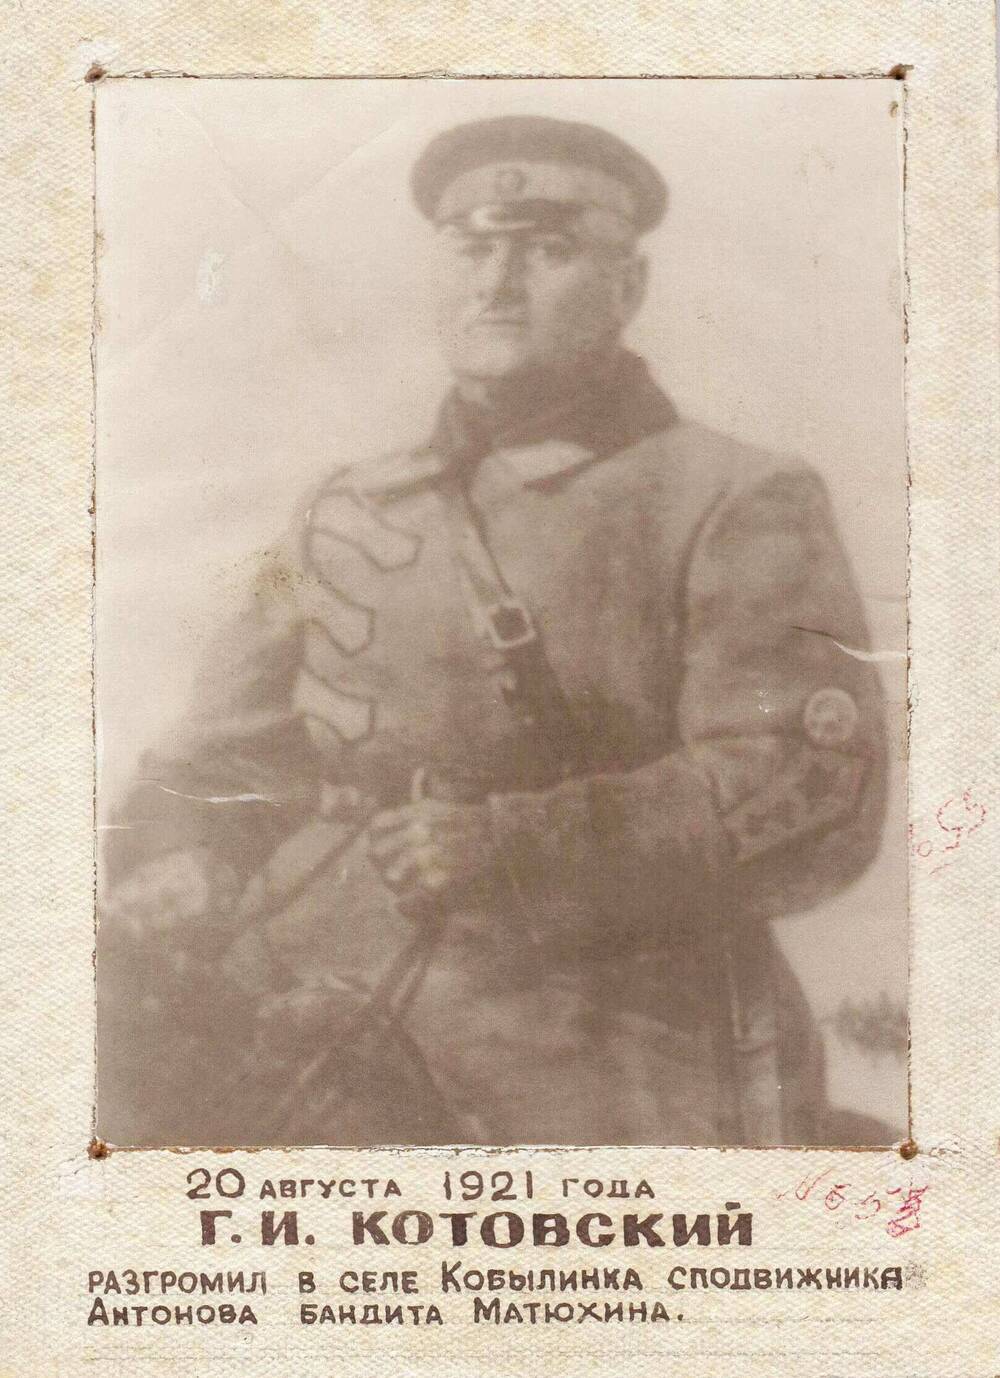 Фотопортрет (копия) поколенный на паспарту Котовского Григория Ивановича